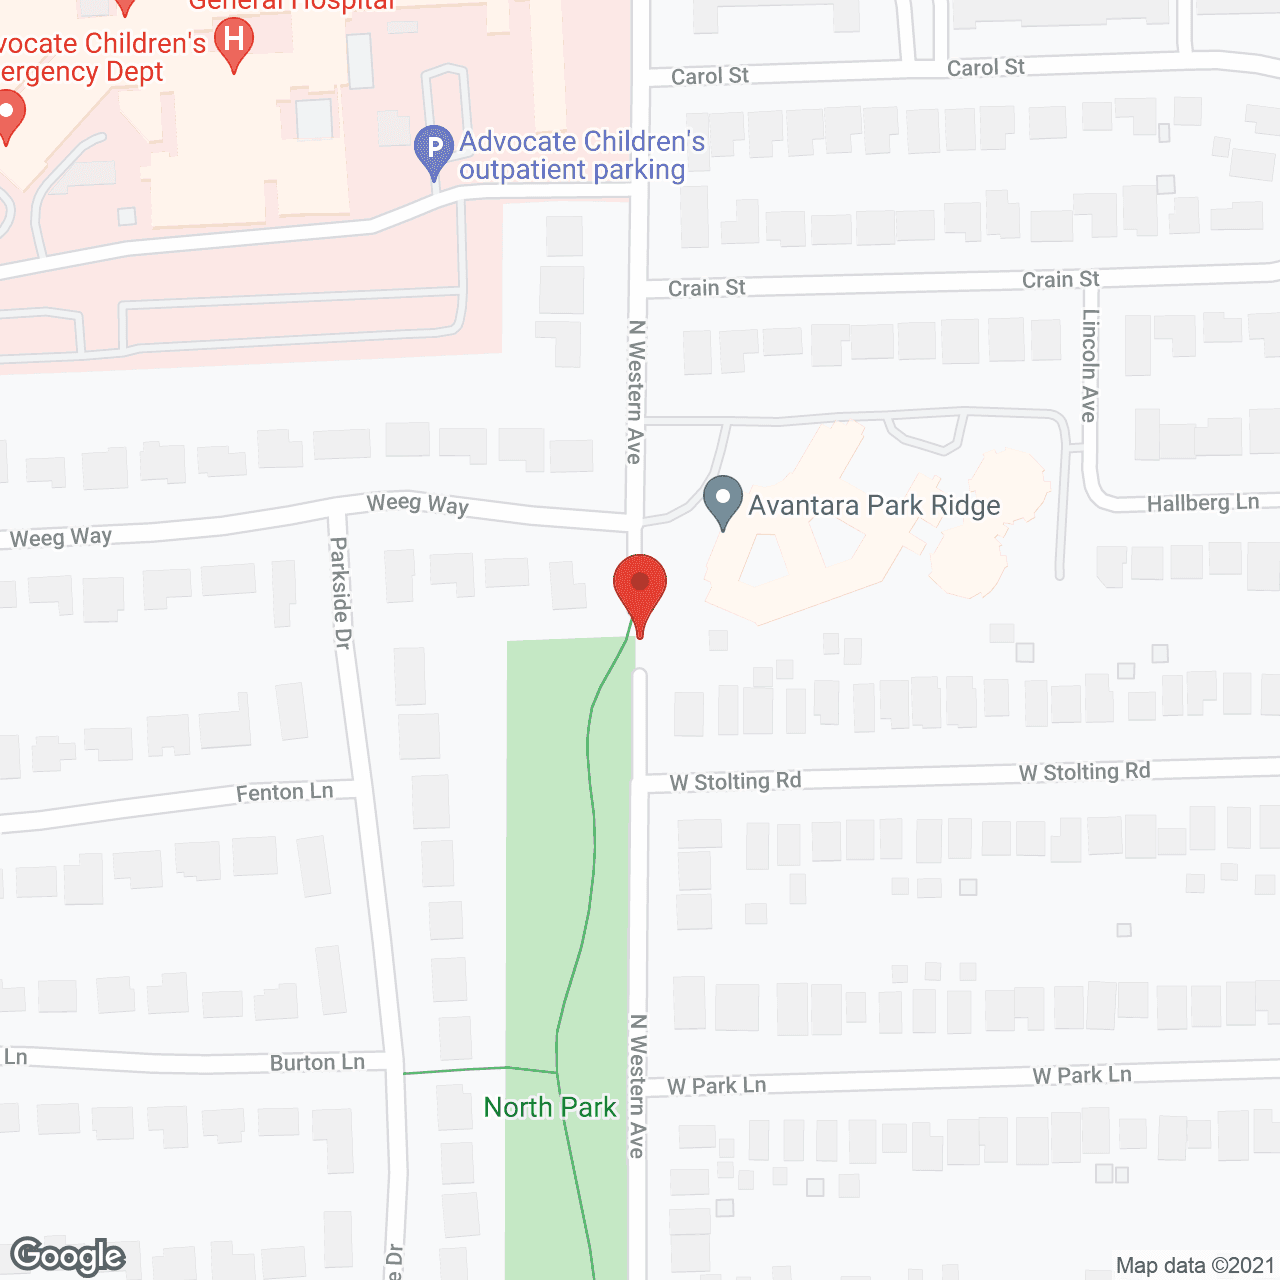 Avantara of Park Ridge in google map